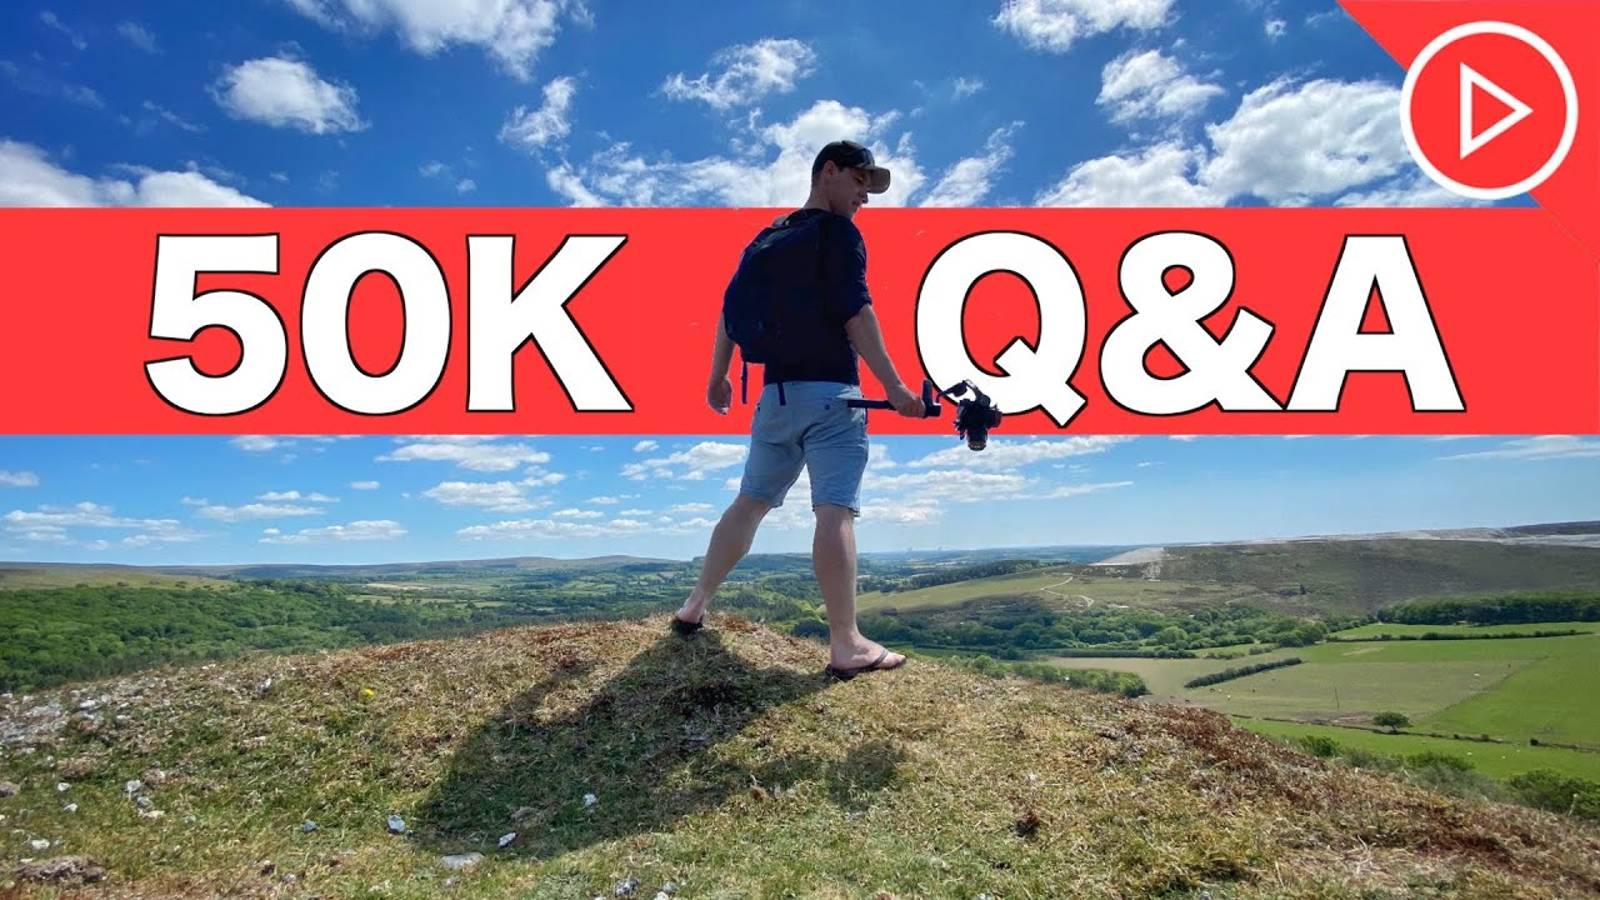 50K Q&A Советы для лучших съёмок
Видео